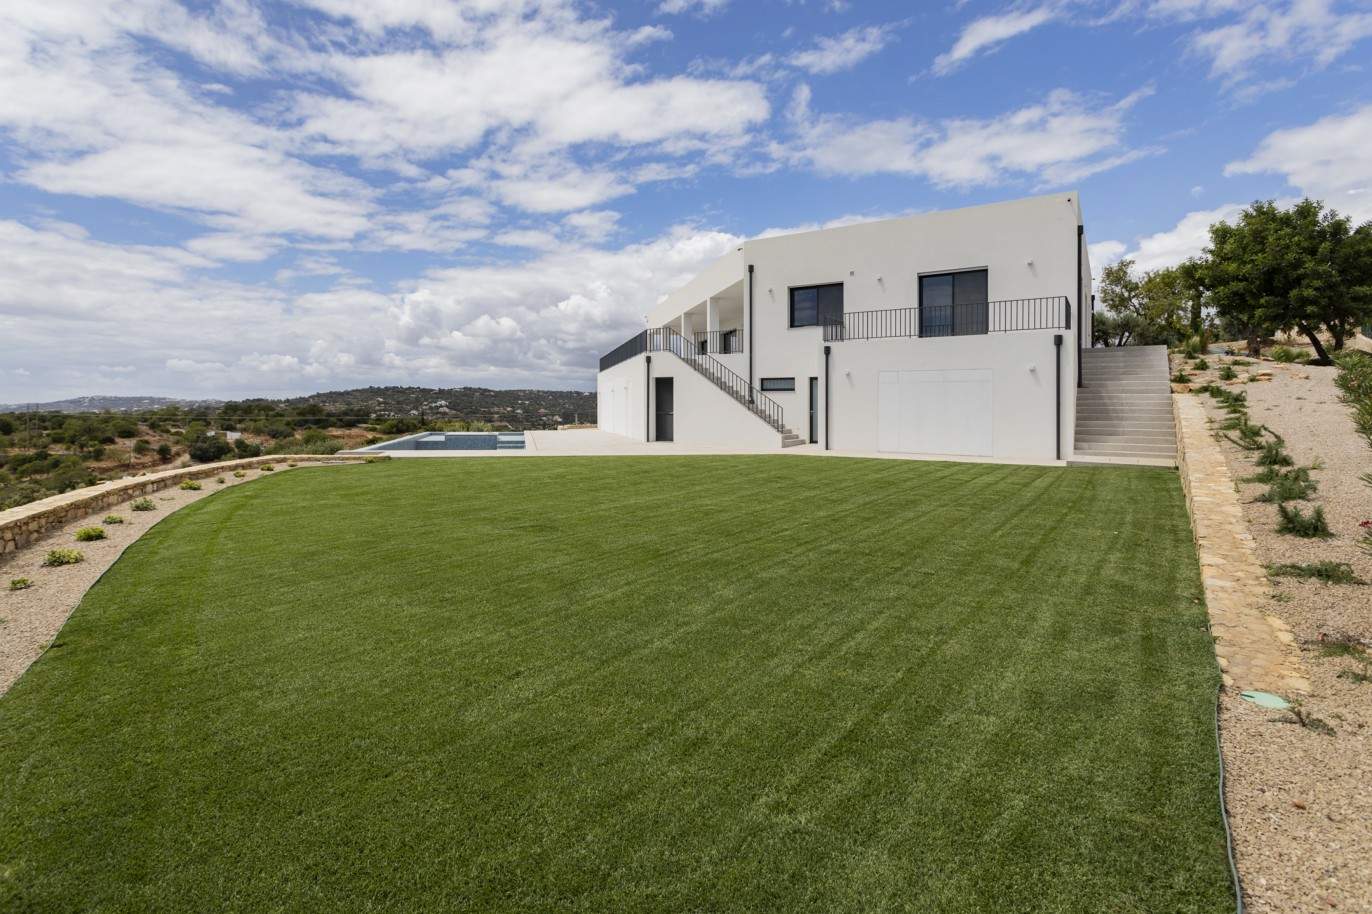 Villa de 4 dormitorios con piscina, en venta en S.Clemente, Loulé, Algarve_201811